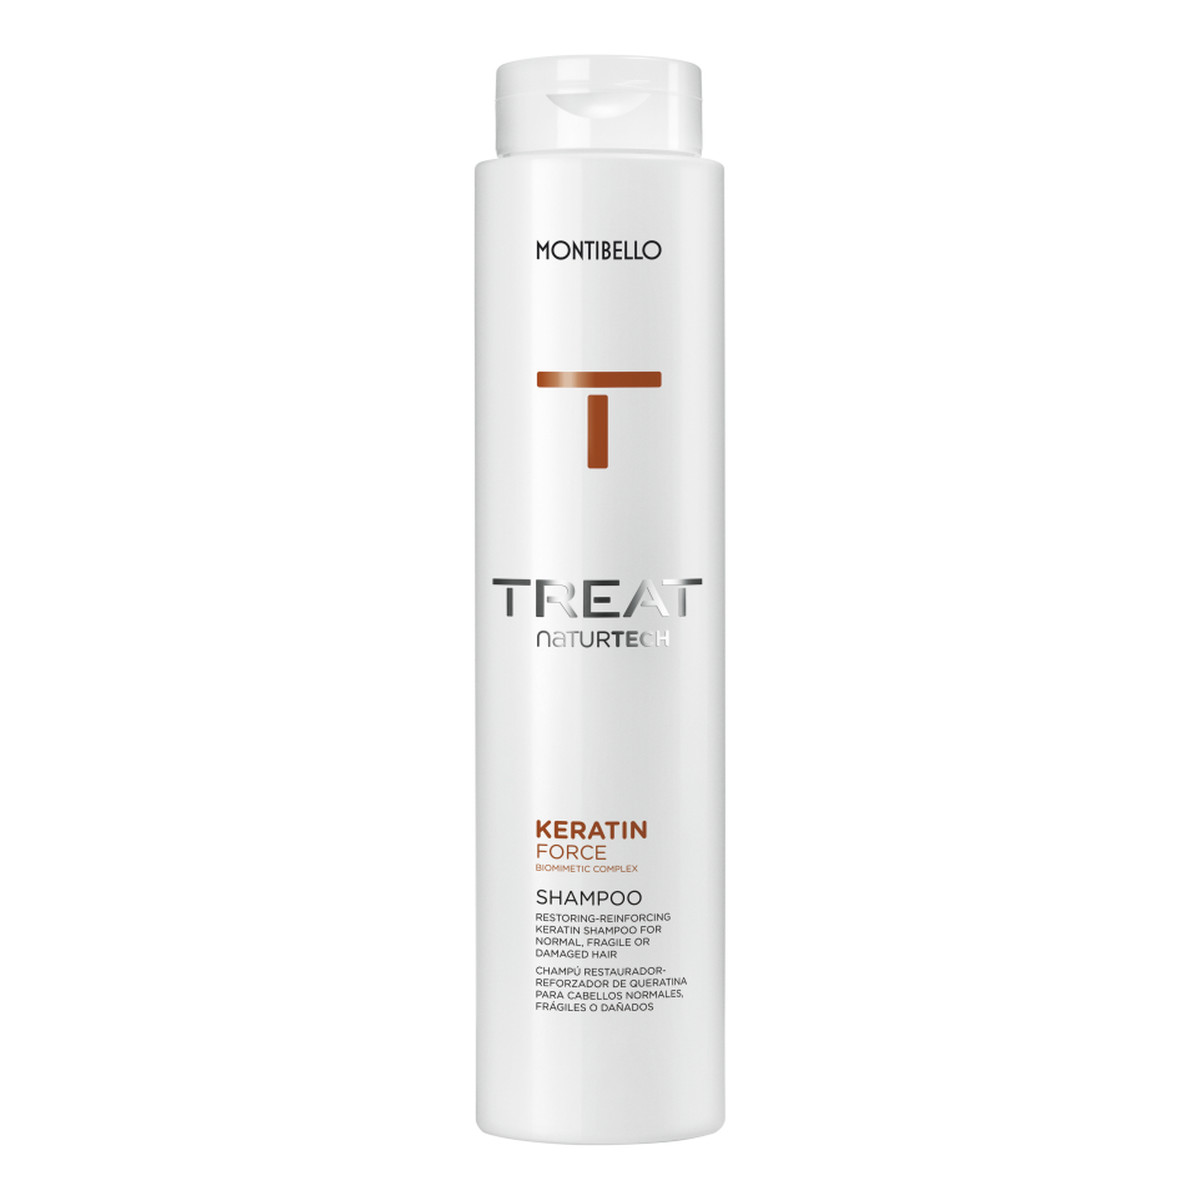 Montibello Treat naturtech keratin force shampoo wzmacniający szampon do włosów z keratyną 300ml